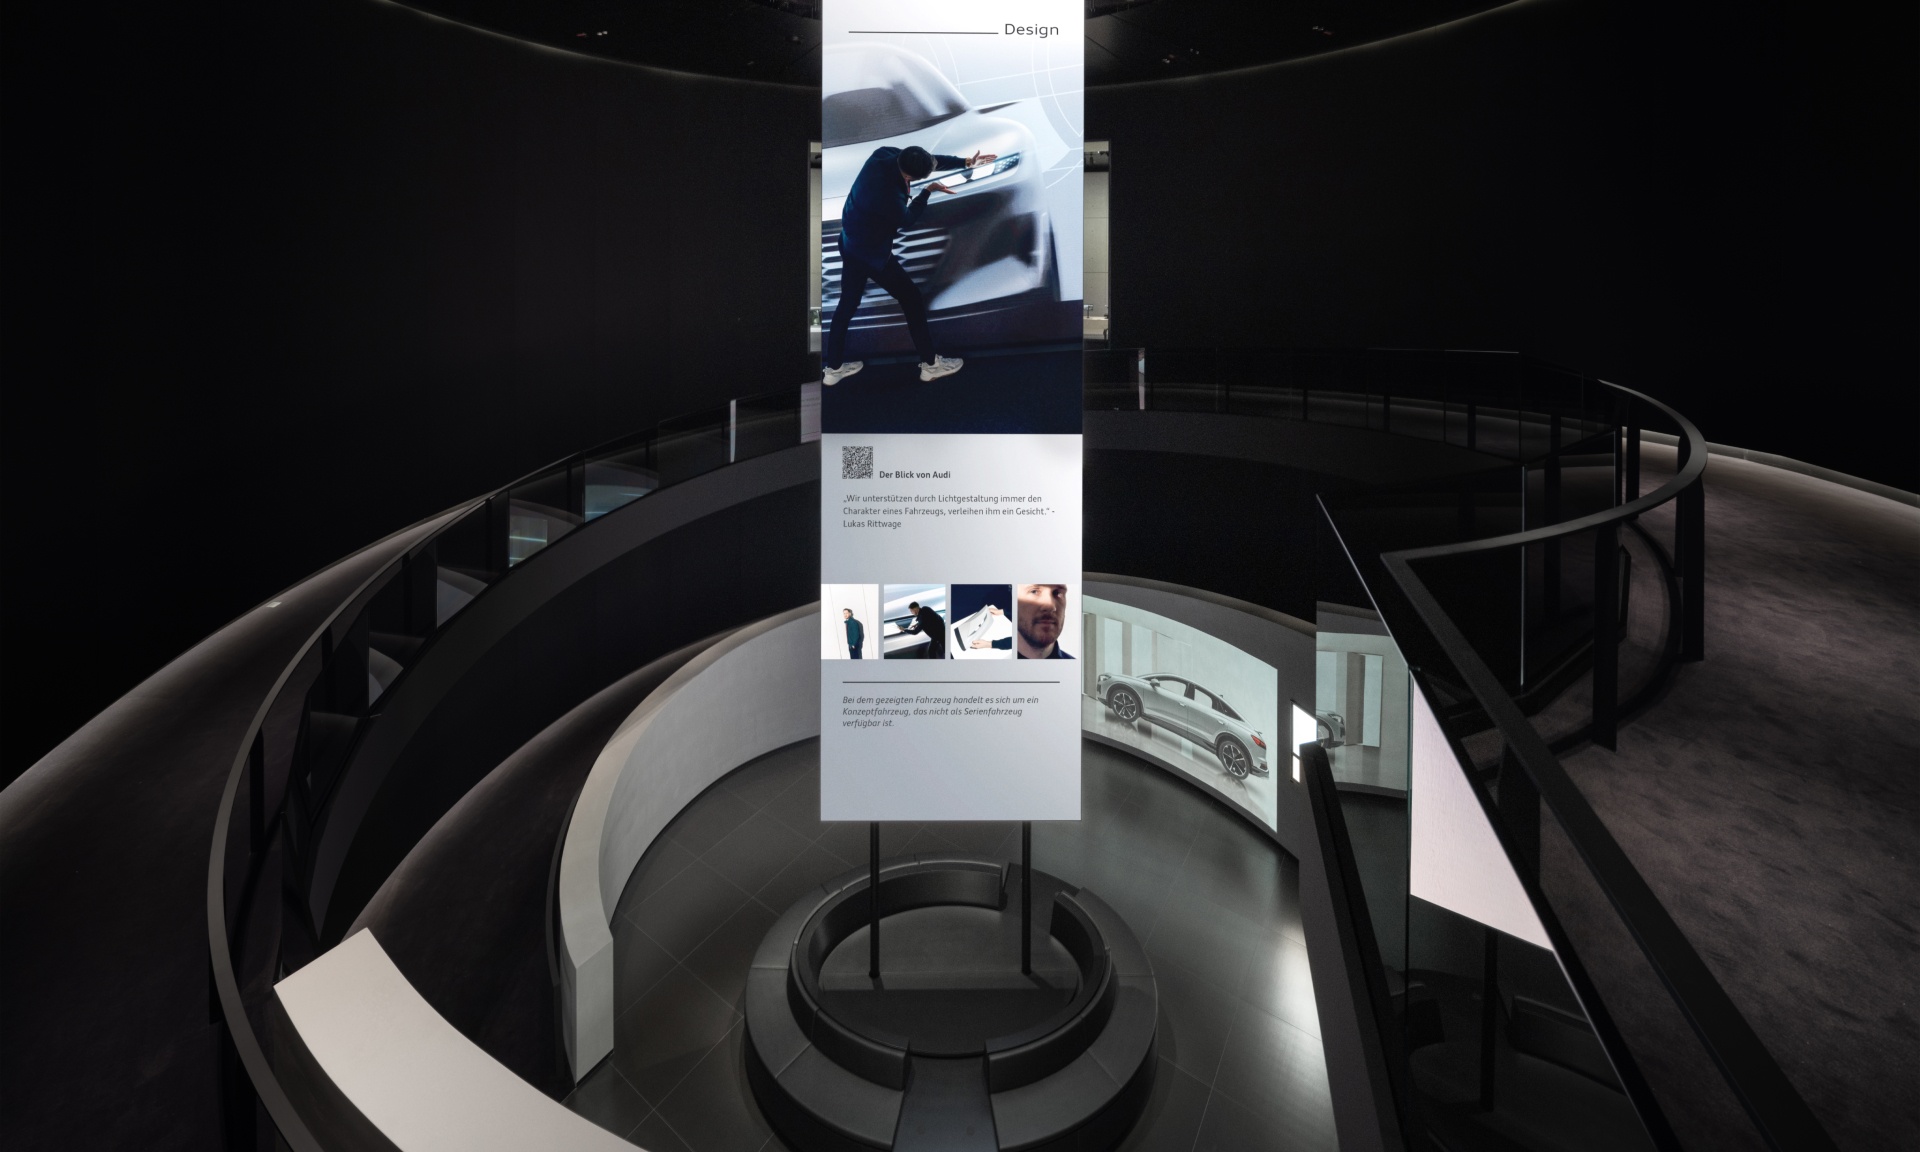 È possibile vedere l'Audi Q4 e-tron e una proiezione sul tema della sostenibilità. Accanto ad essa si trova la tabella informativa.